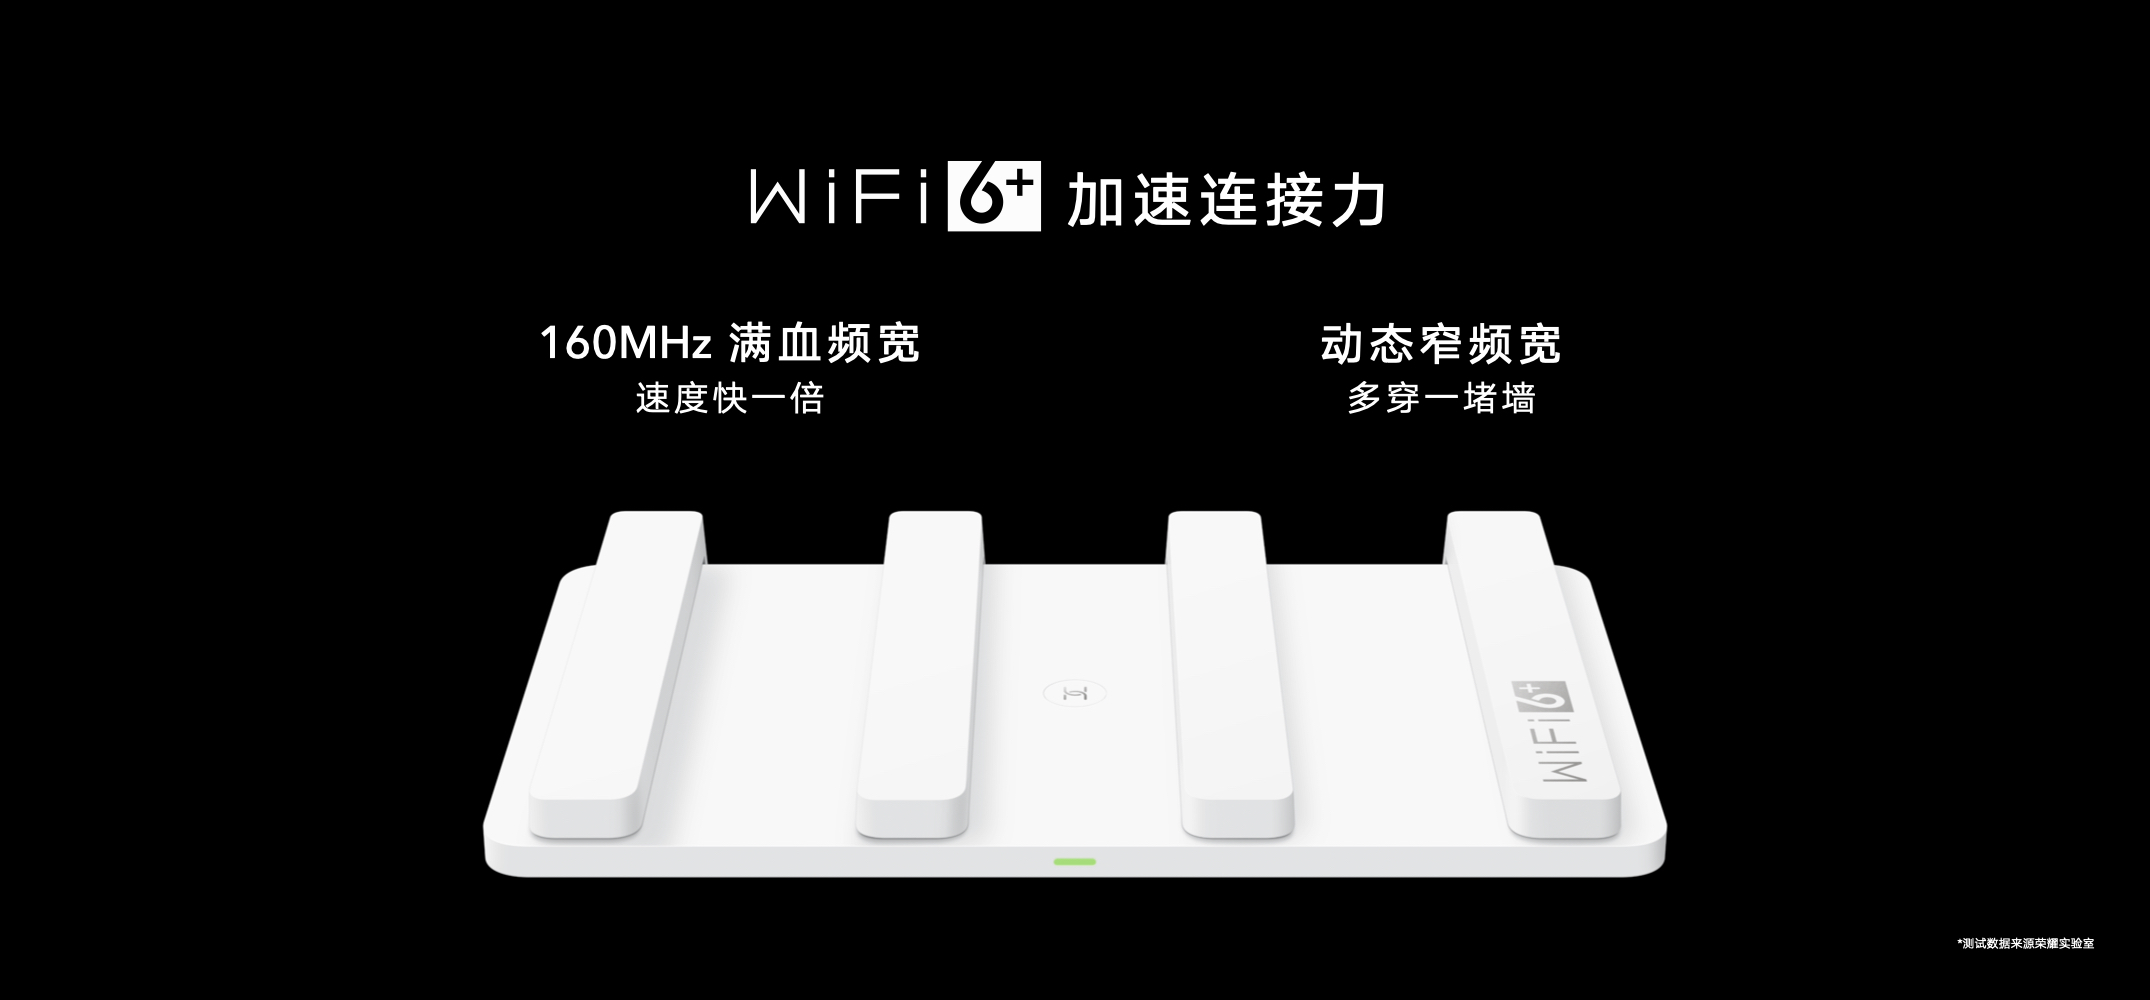 荣耀首款Wi-Fi 6+智能路由重磅发布，219元领先同级让网速翻倍